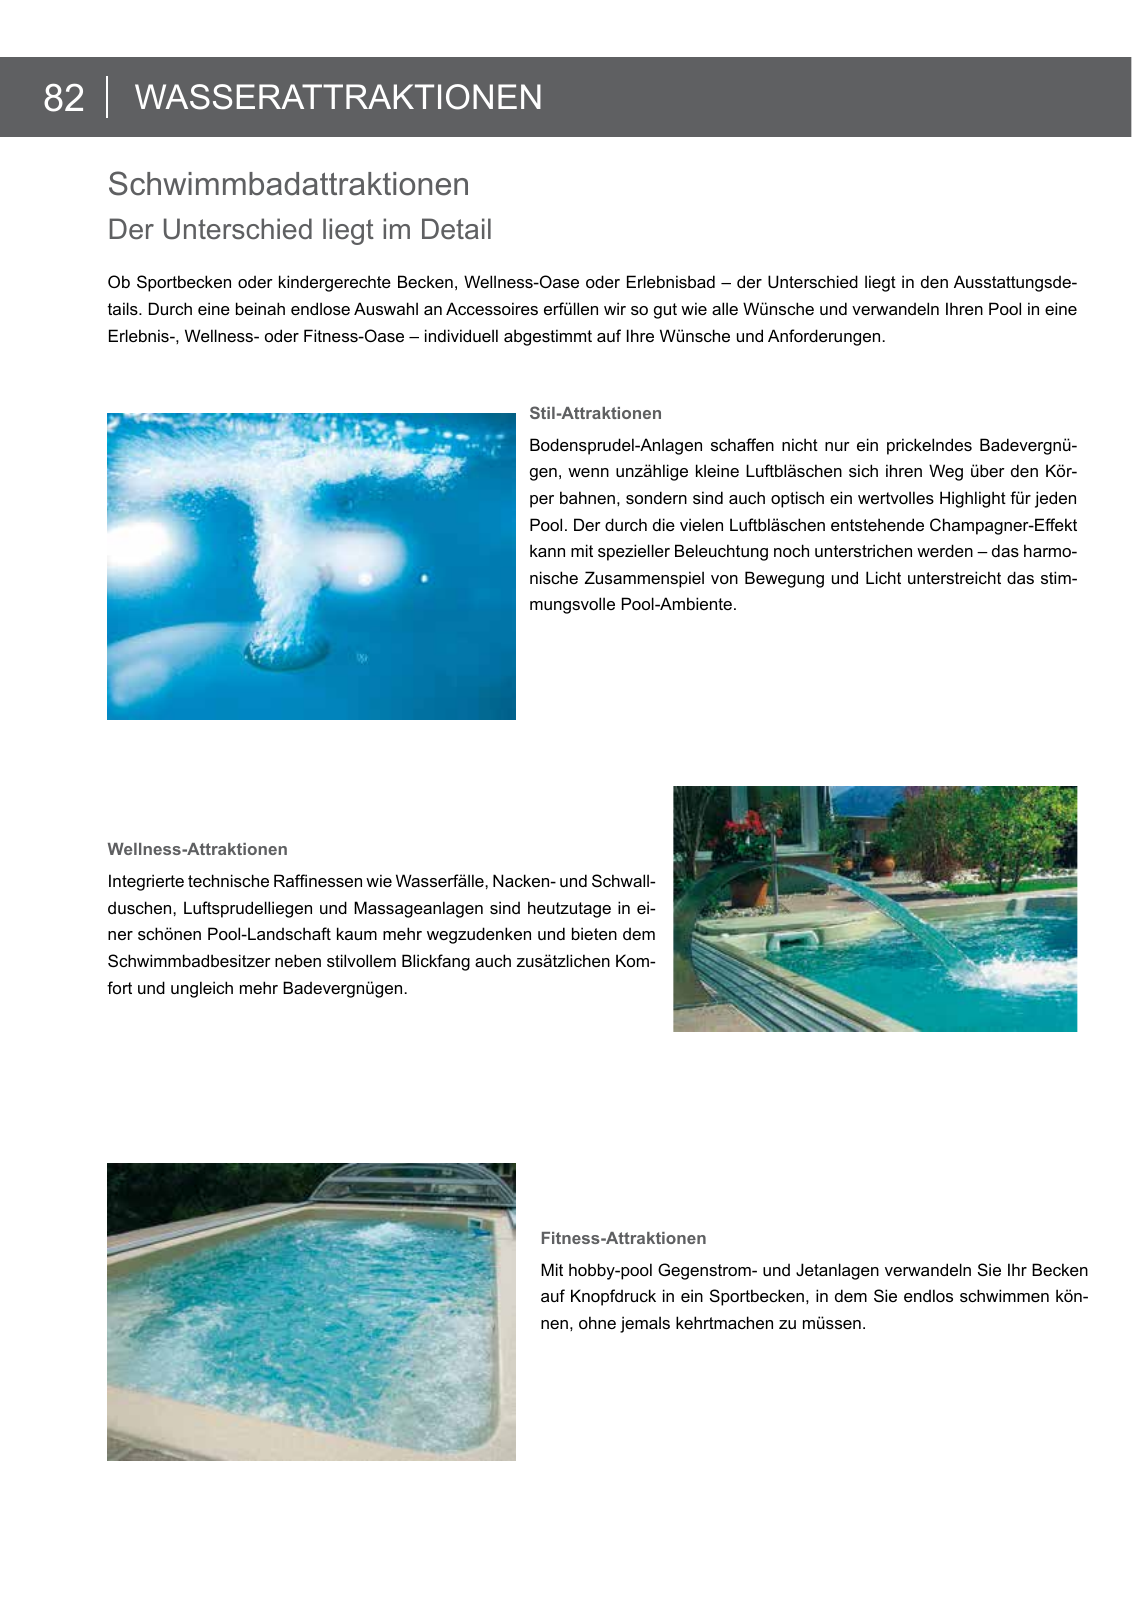 Vorschau arcana Schwimmbadkatalog 2016 Seite 82